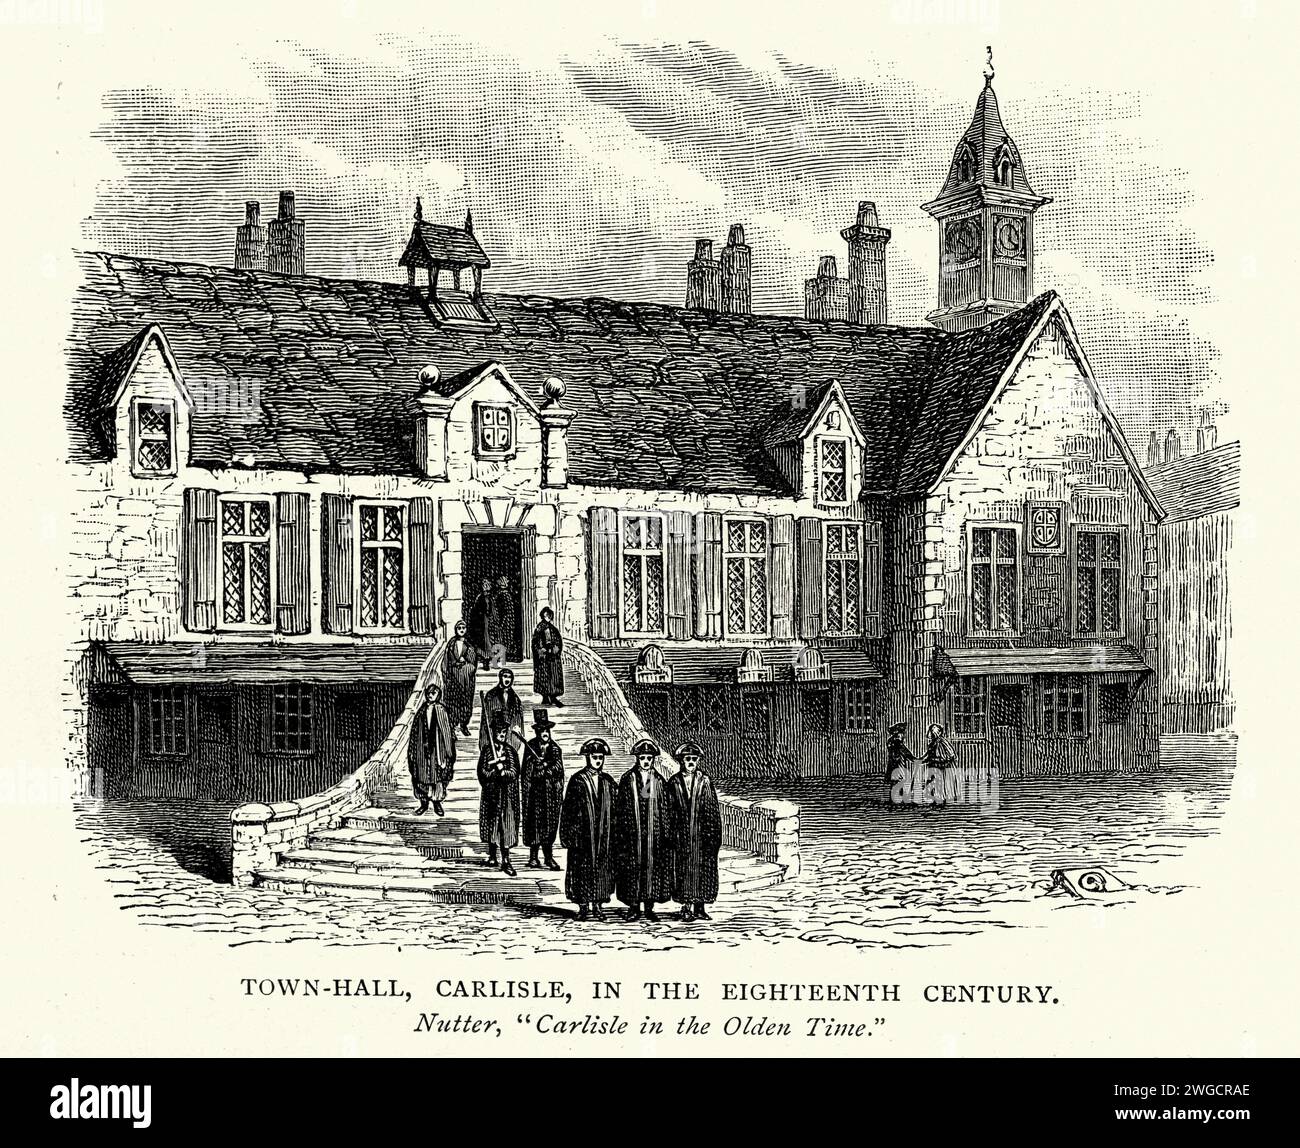 Architecture anglaise, Hôtel de ville historique de Carlisle, Histoire Angleterre au 18e siècle Banque D'Images